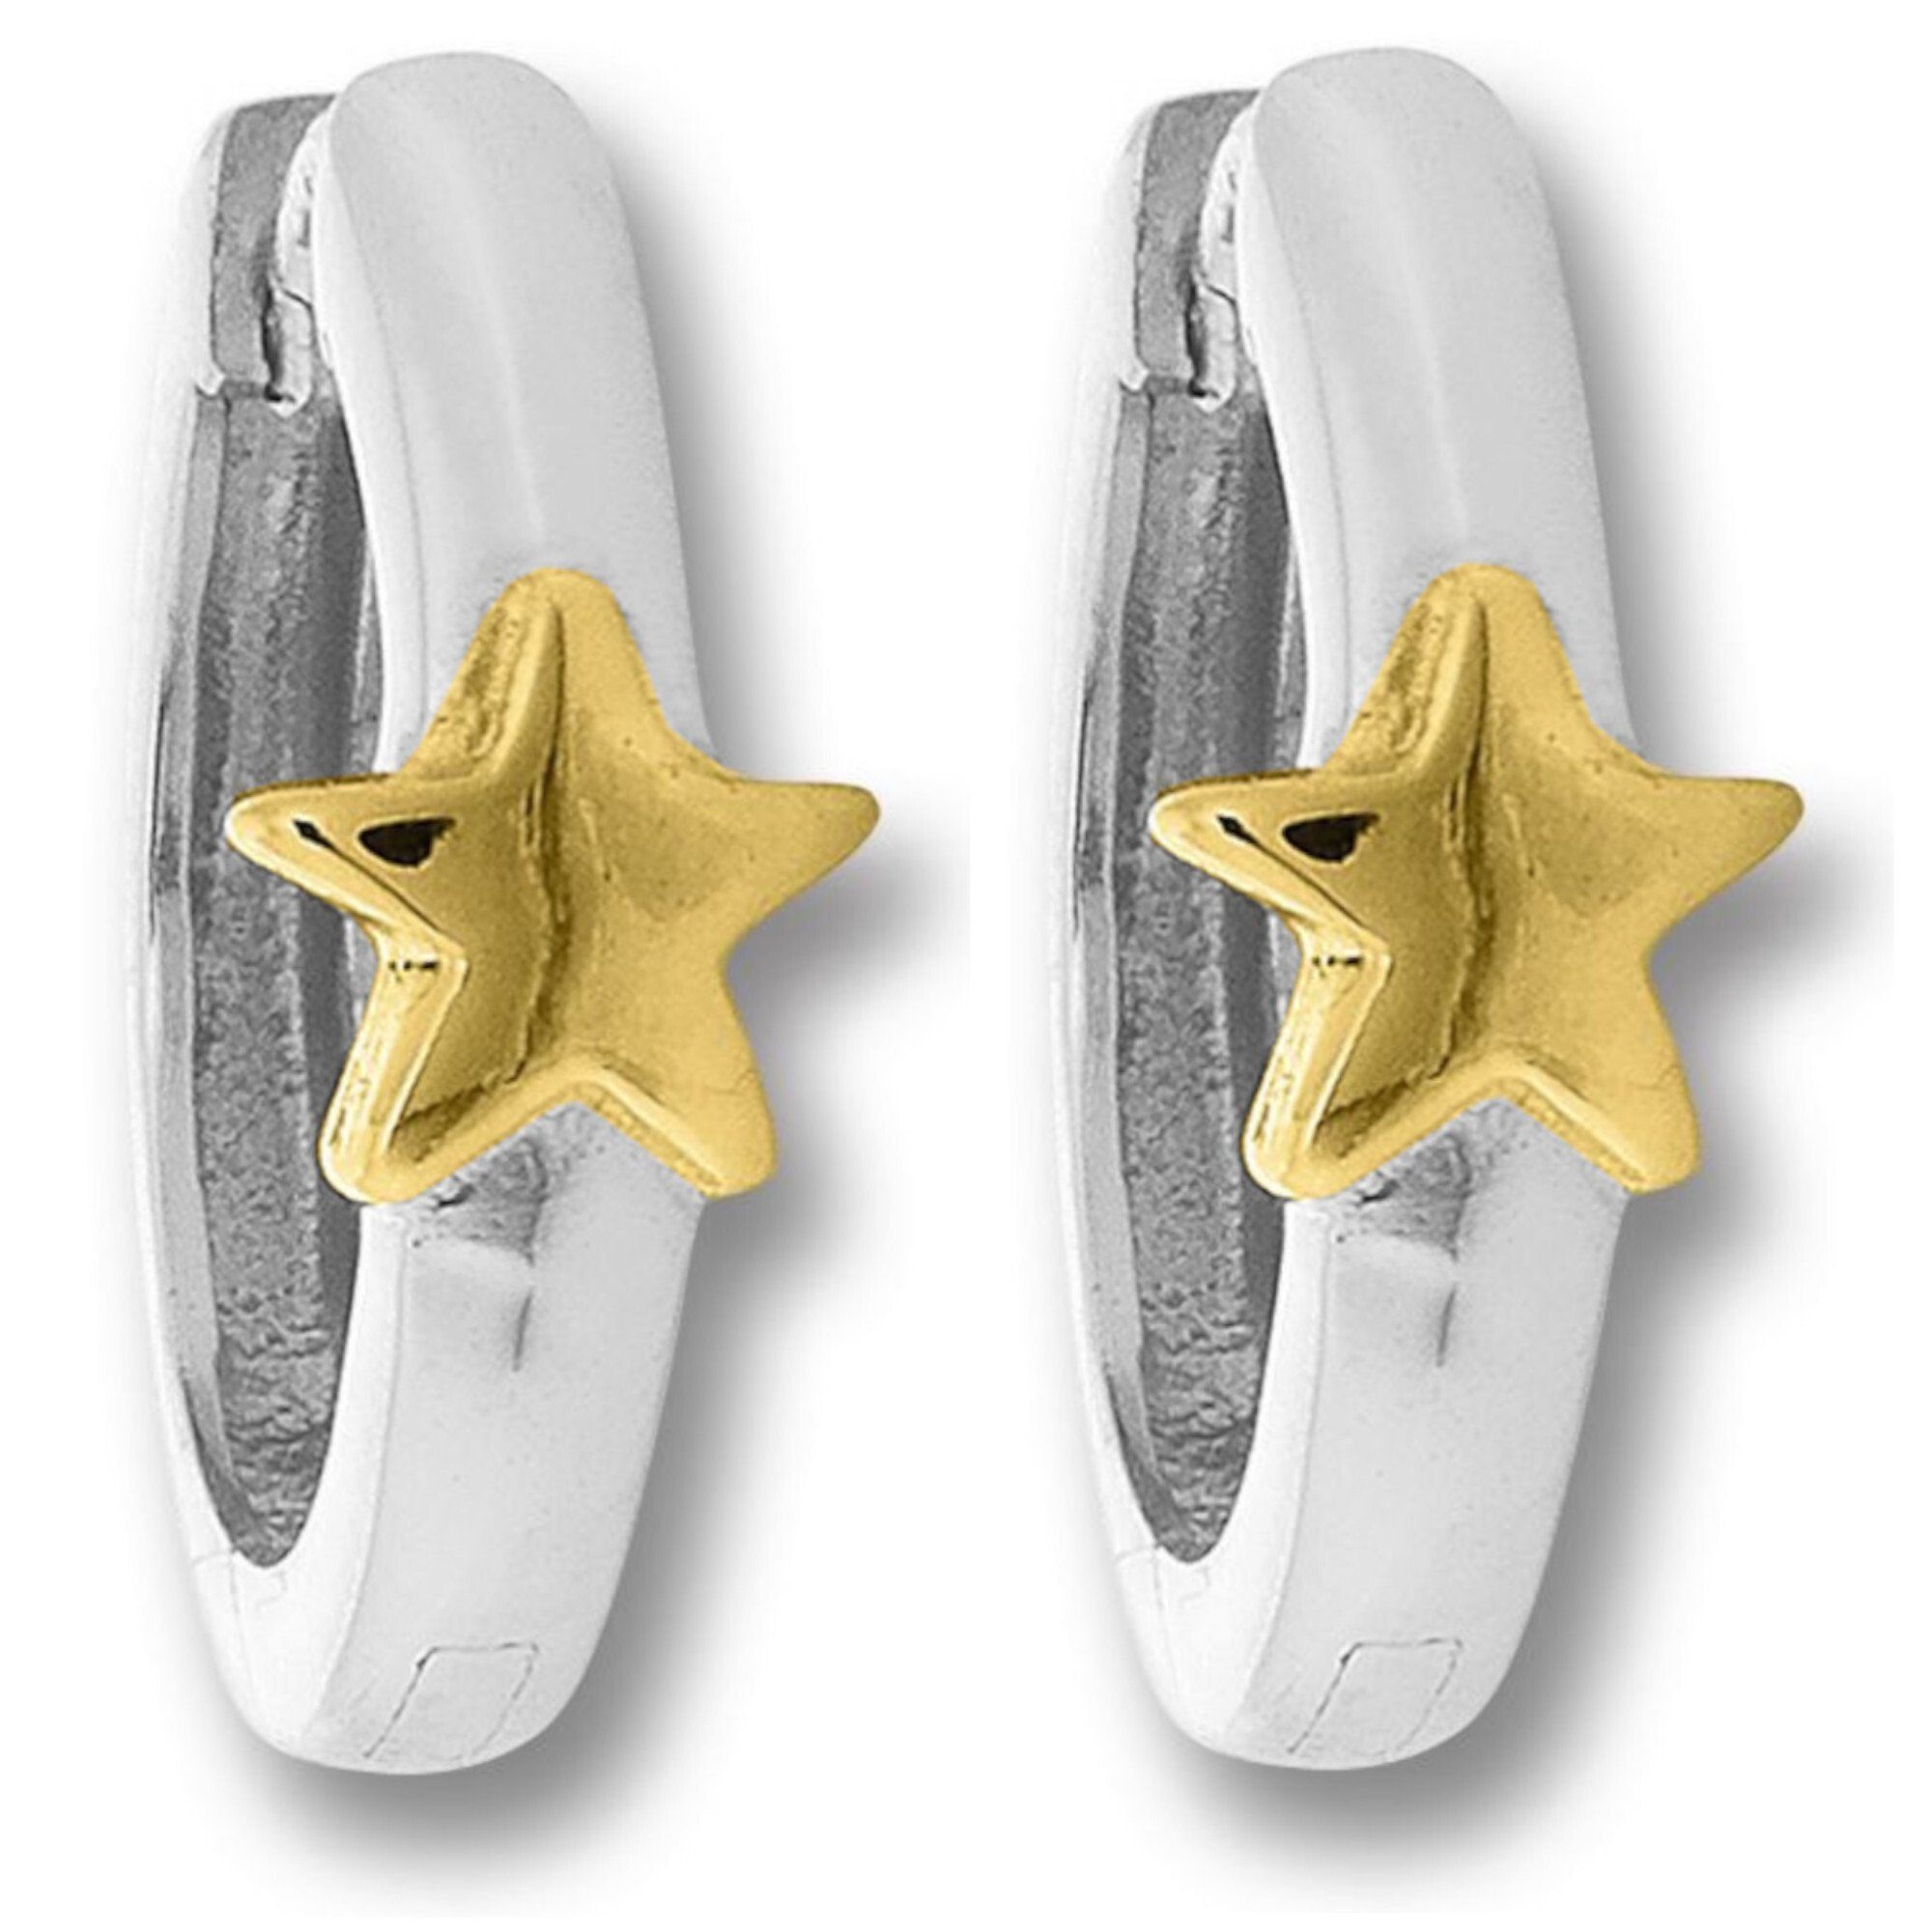 Sofort lieferbar und zu Sonderpreisen Stern ONE Damen Ohrringe Stern Creolen Schmuck Silber, Paar Creolen ELEMENT Silber 925 aus